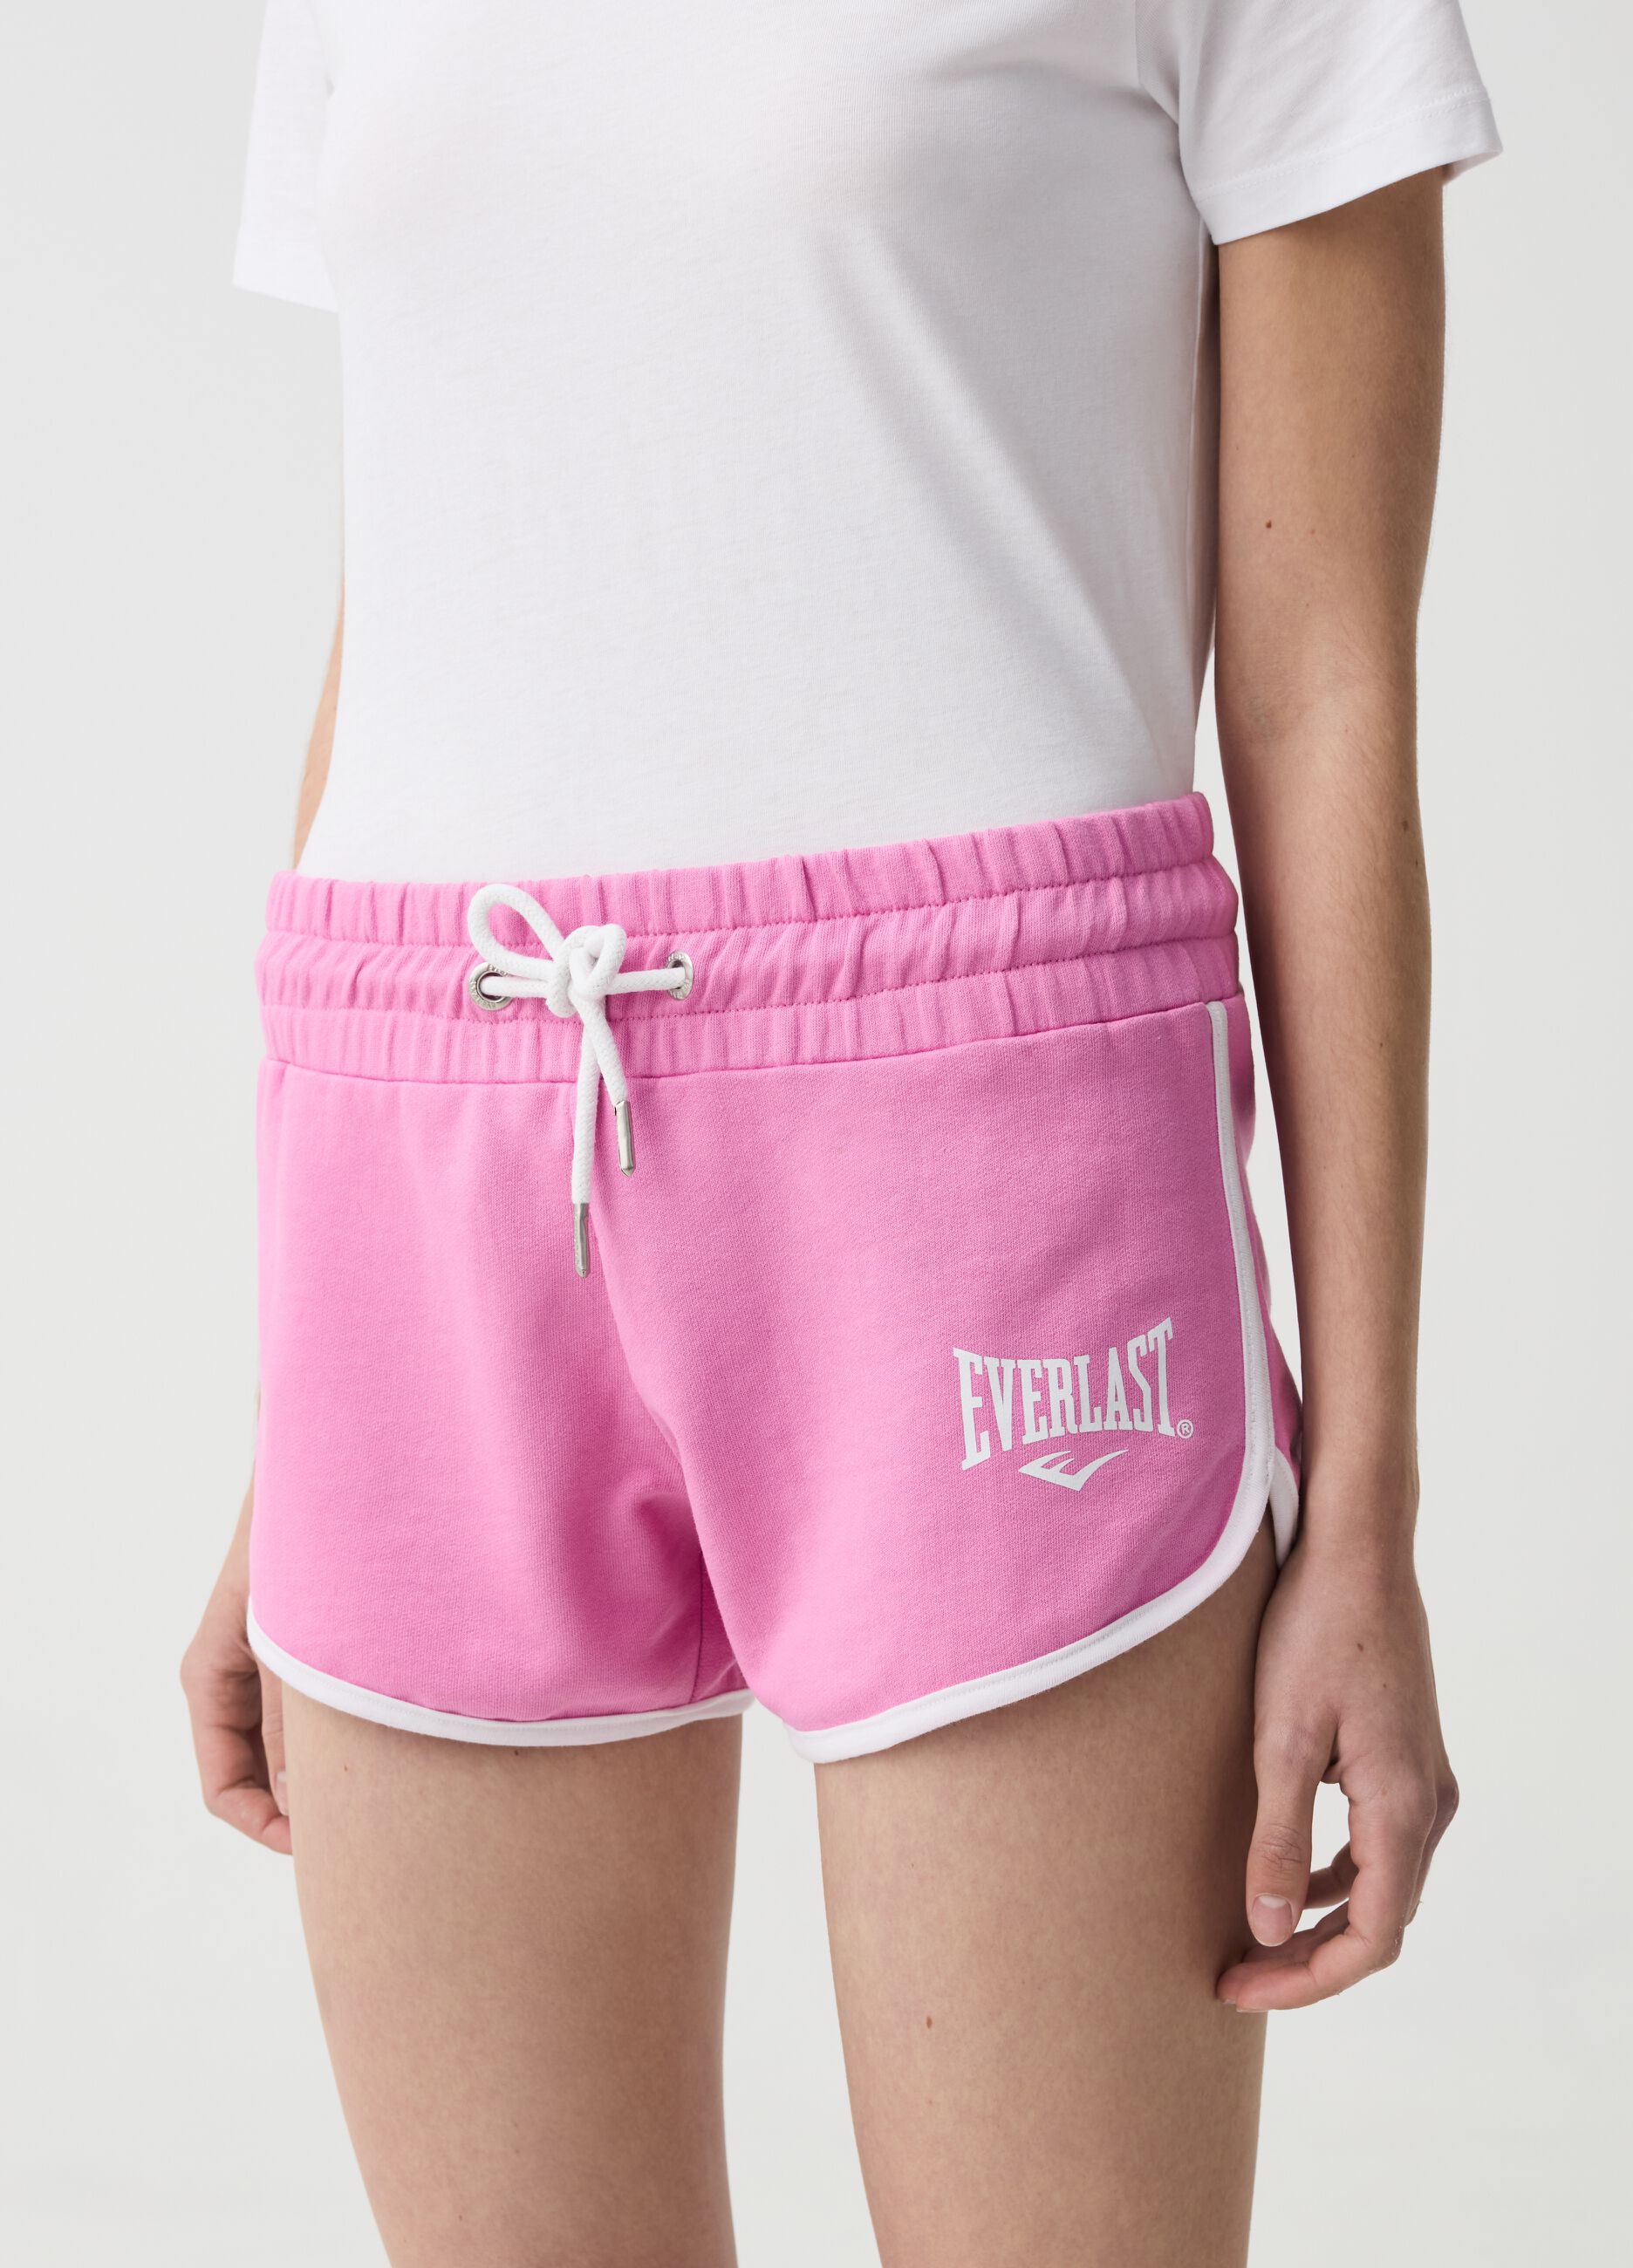 Shorts with drawstring and logo print